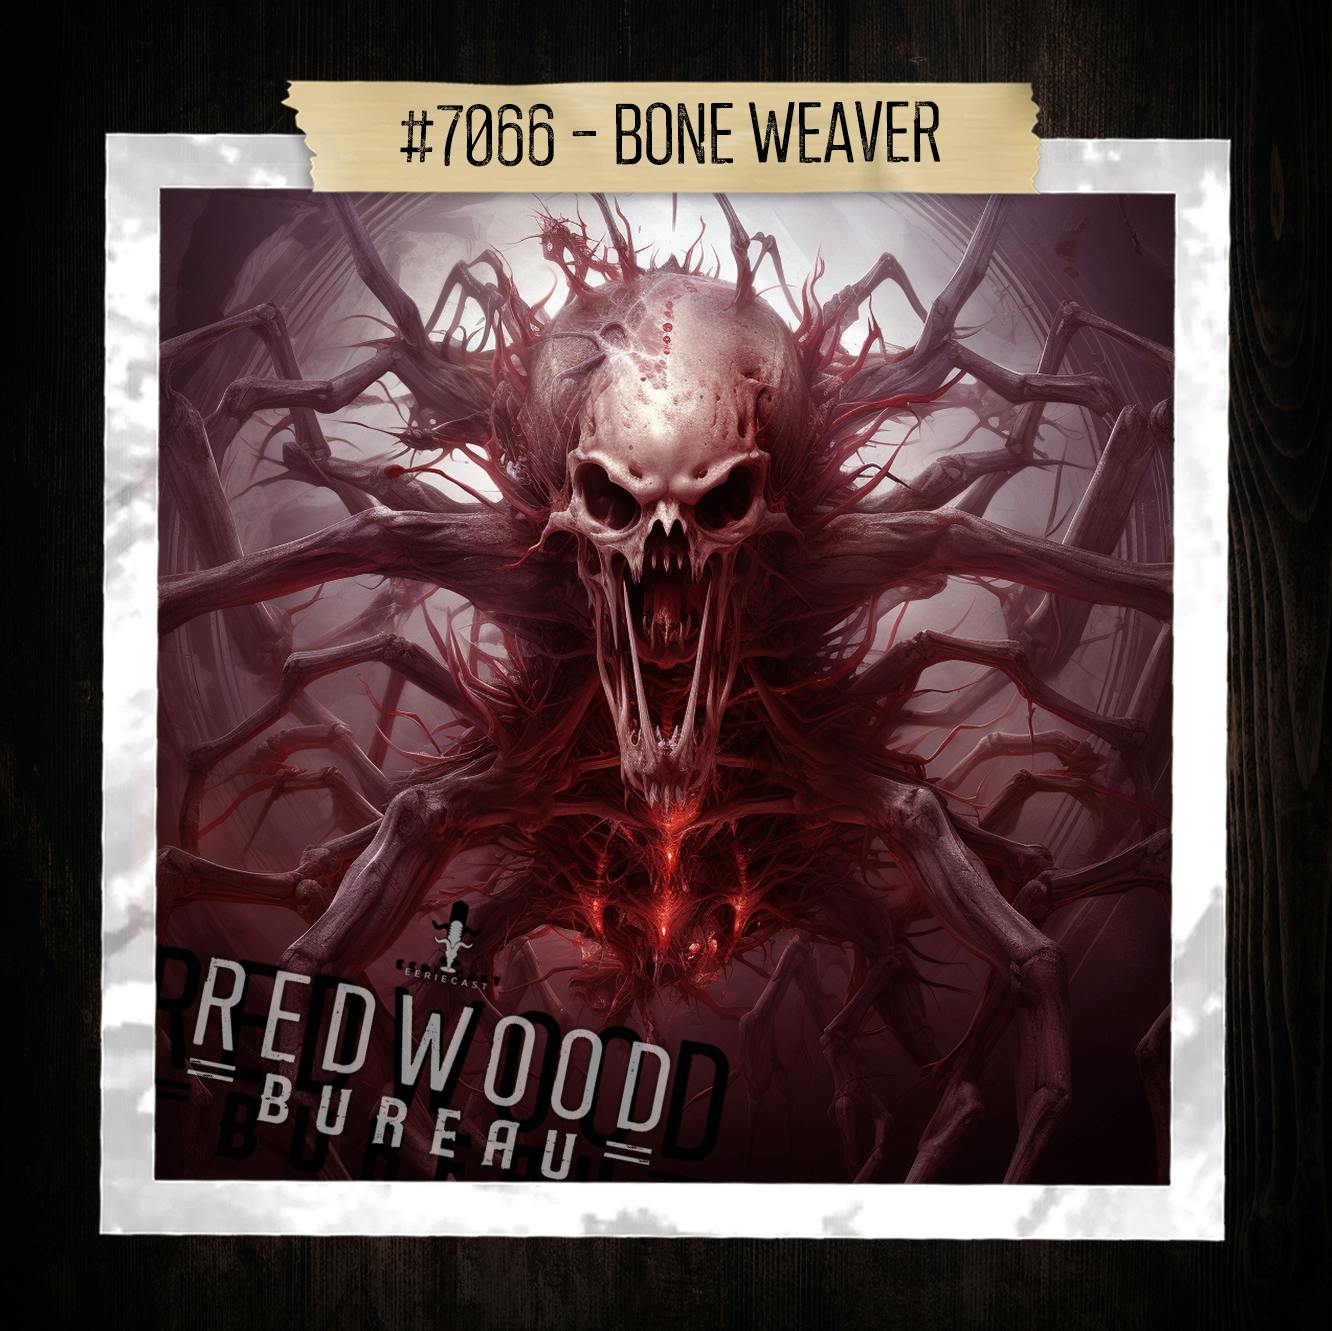 "BONE WEAVER" - Redwood Bureau Phenomenon #7066